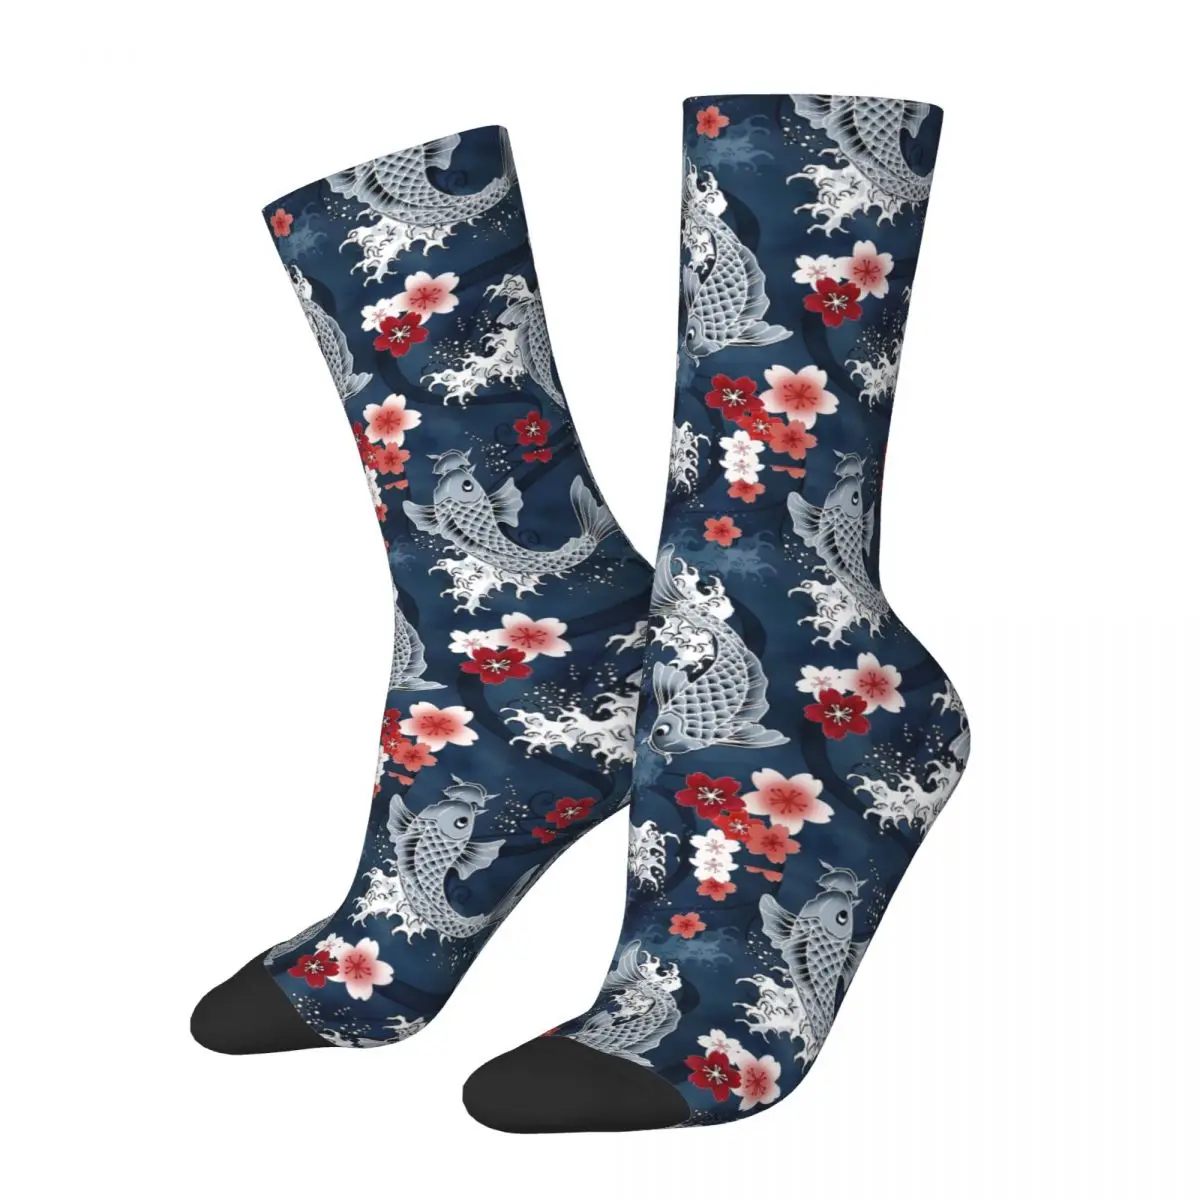 Retro Koi Sakura Blossom In Blue Football Socks Pond Carp Water Polyester Long Socks for Women Men Sweat Absorbing